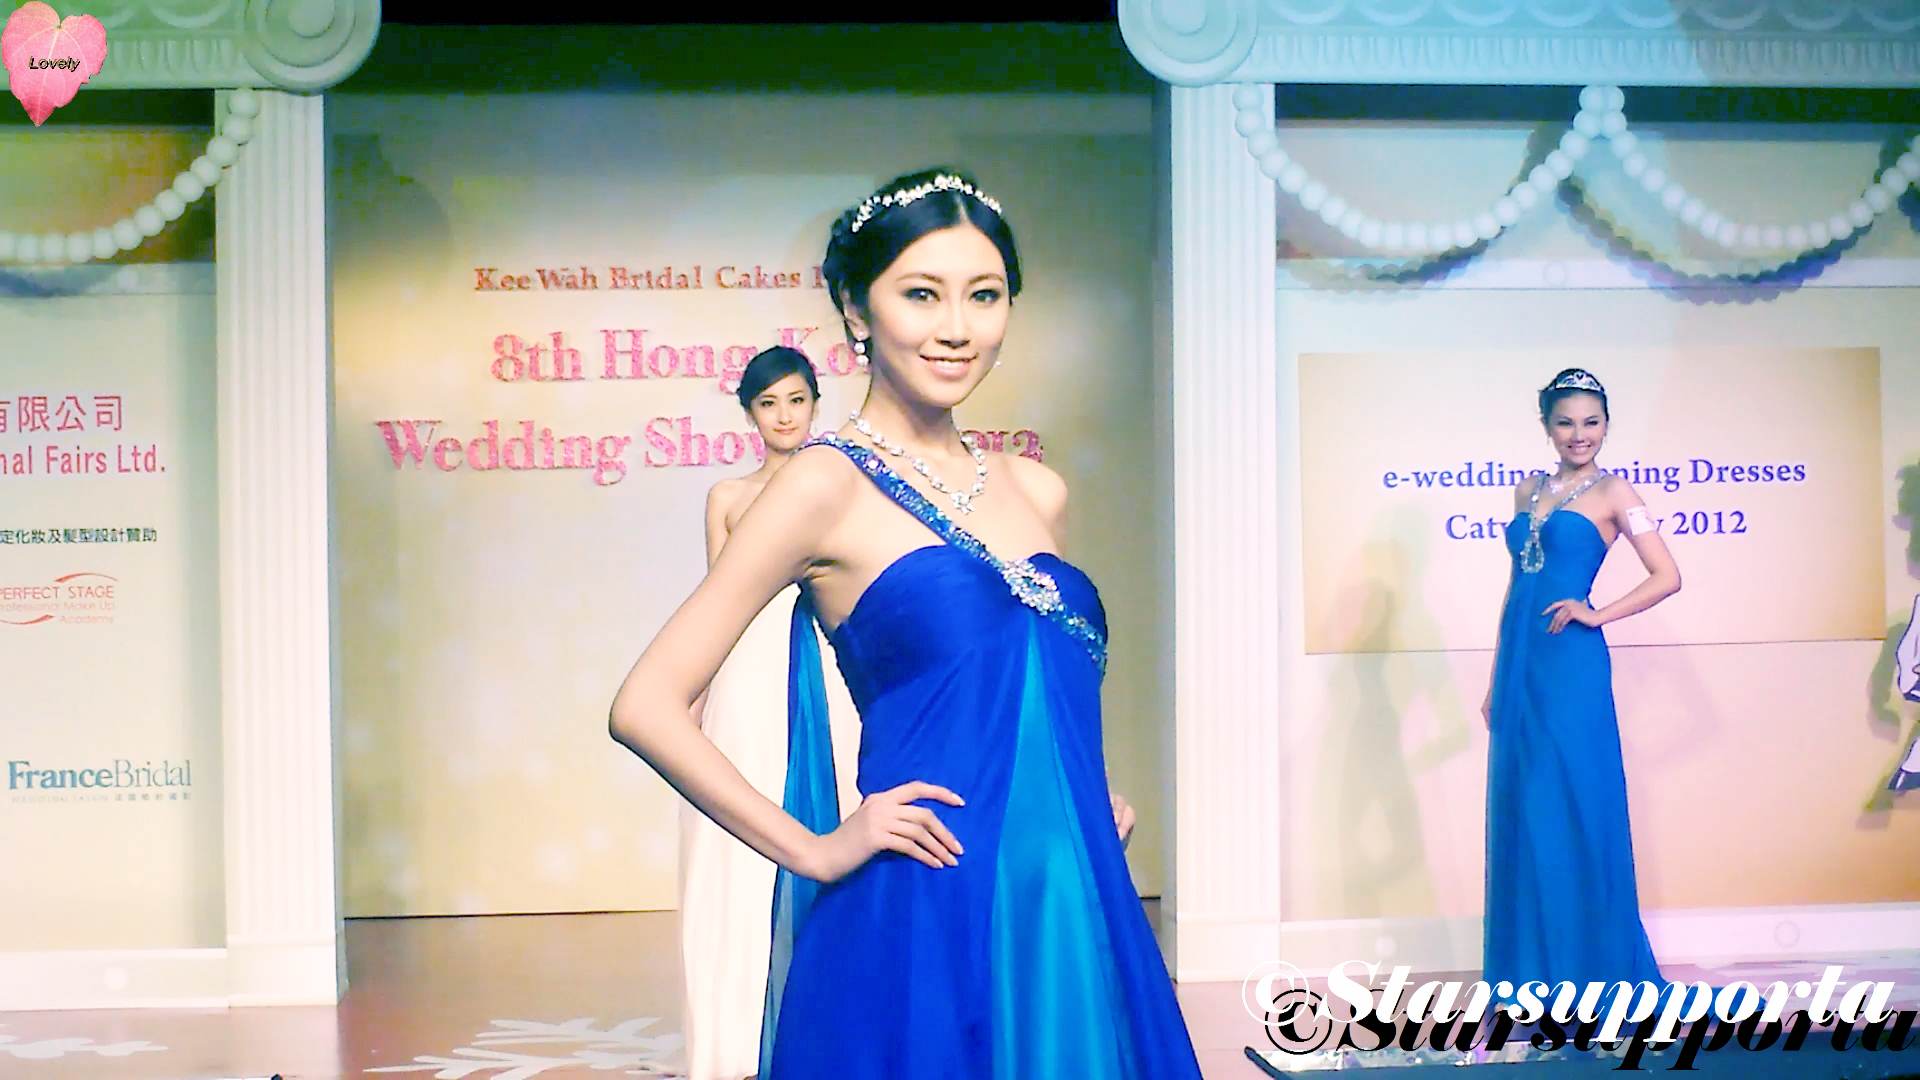 20120108 8th Hong Kong Wedding Showcase 2012 - e-wedding Evening Dress Catwalk Show 2012 @ 香港Emax (video)